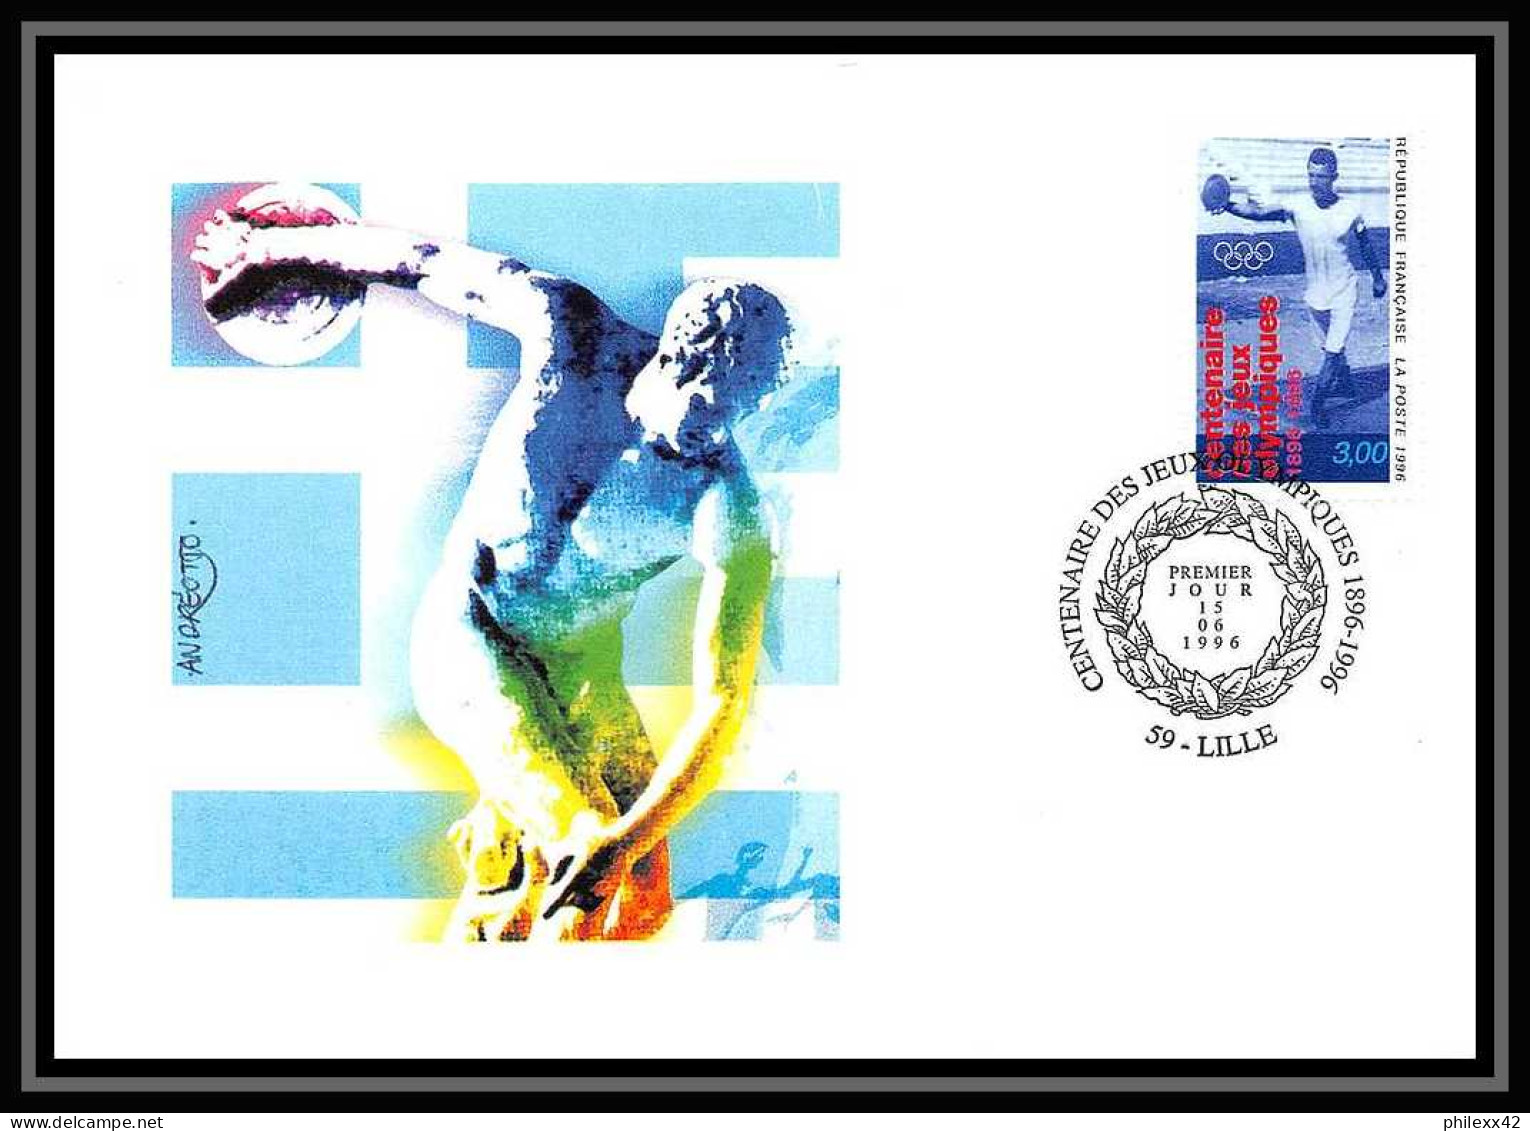 4836 Carte Maximum Card France Lot De 2 Documents 3016 Centenaire Des Jeux Olympiques Olympic Games édition Cef Fdc 1996 - Sommer 1896: Athen